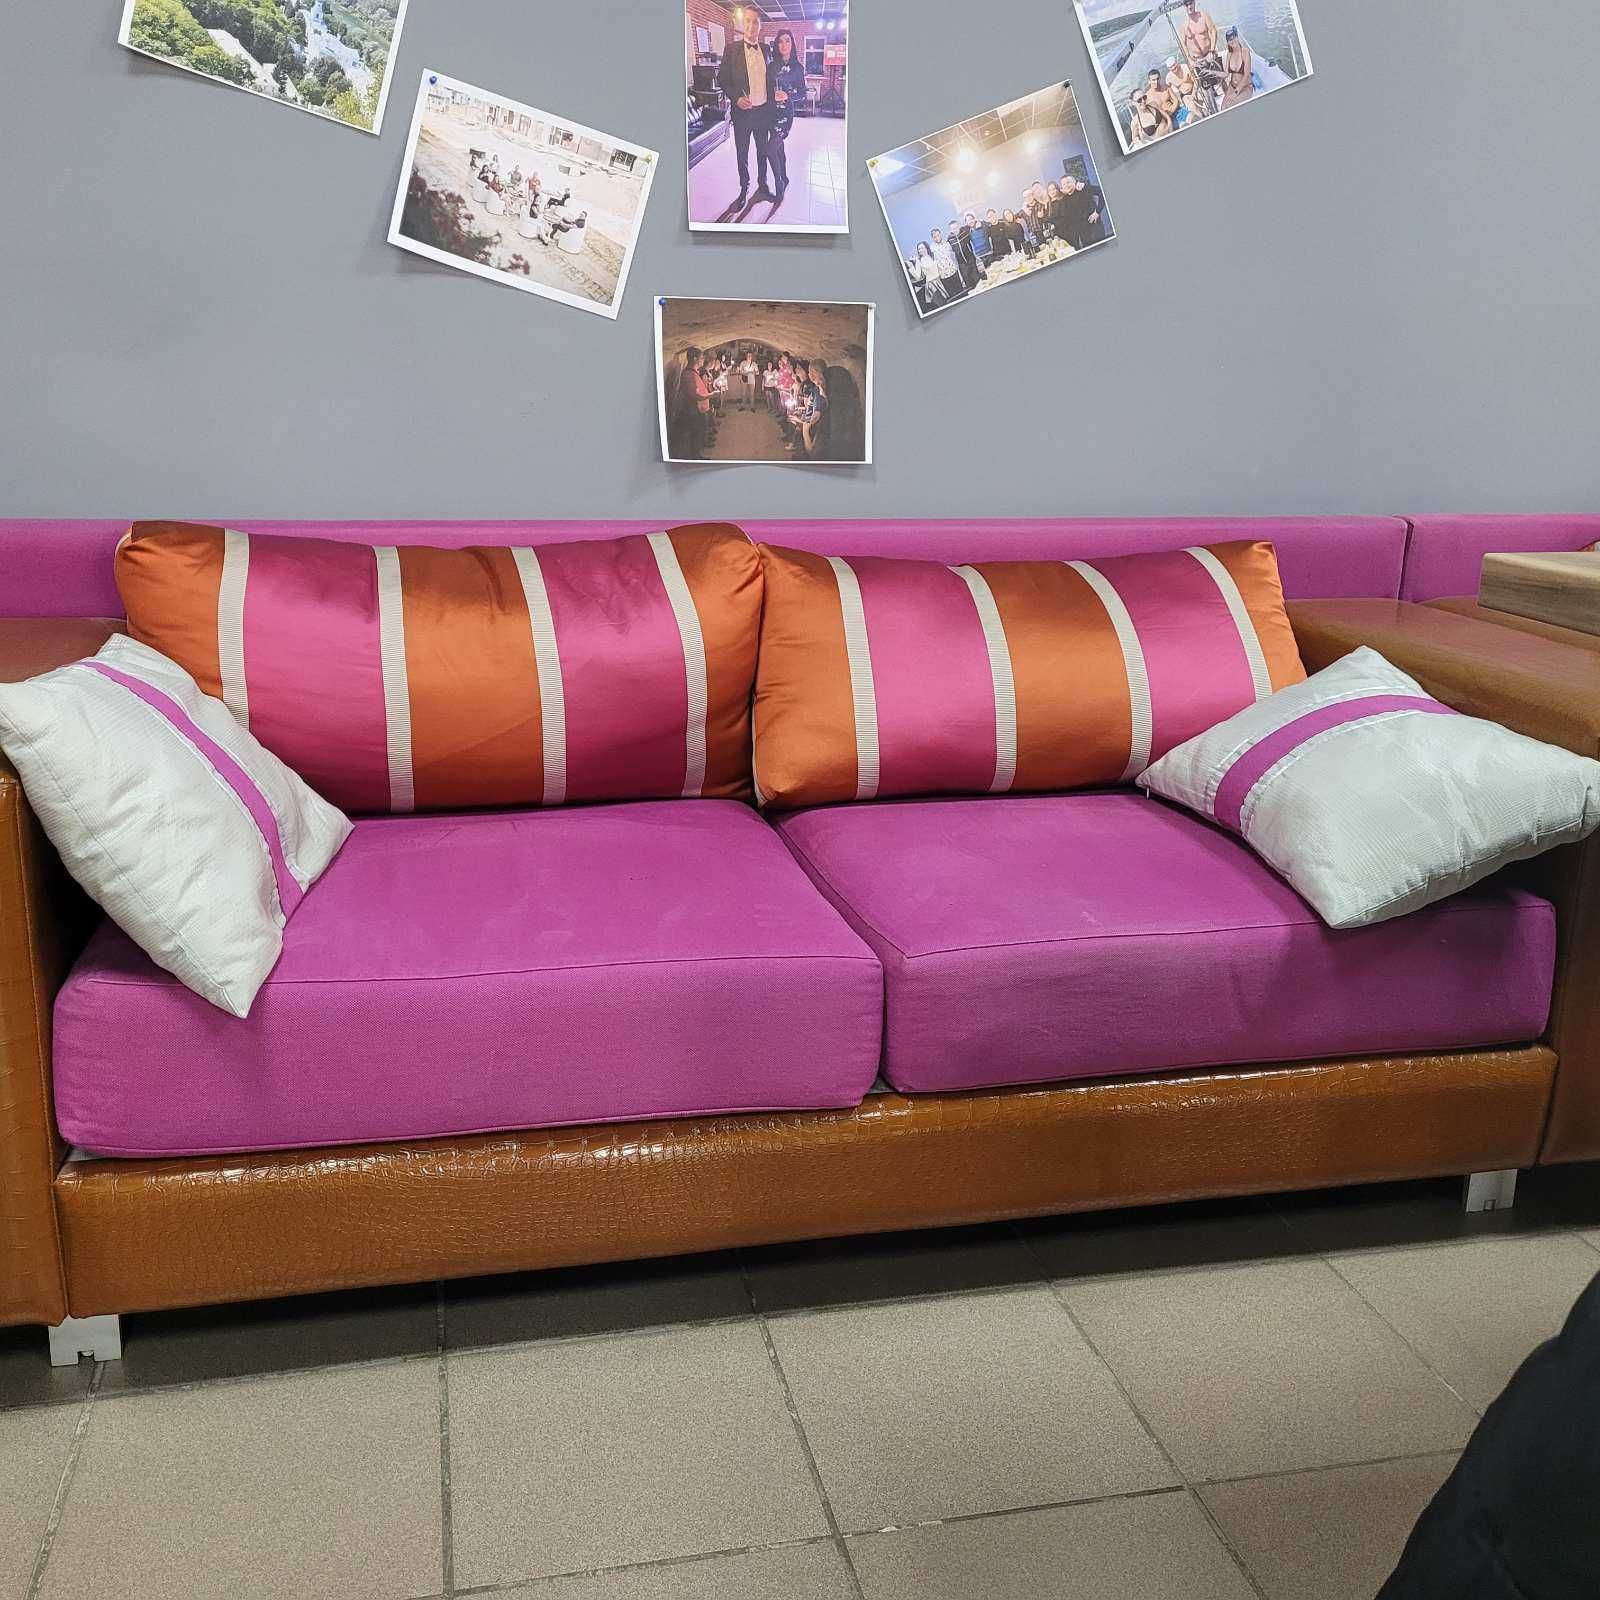 Итальянские диваны для гостинной, офиса. Продажа только комплектом